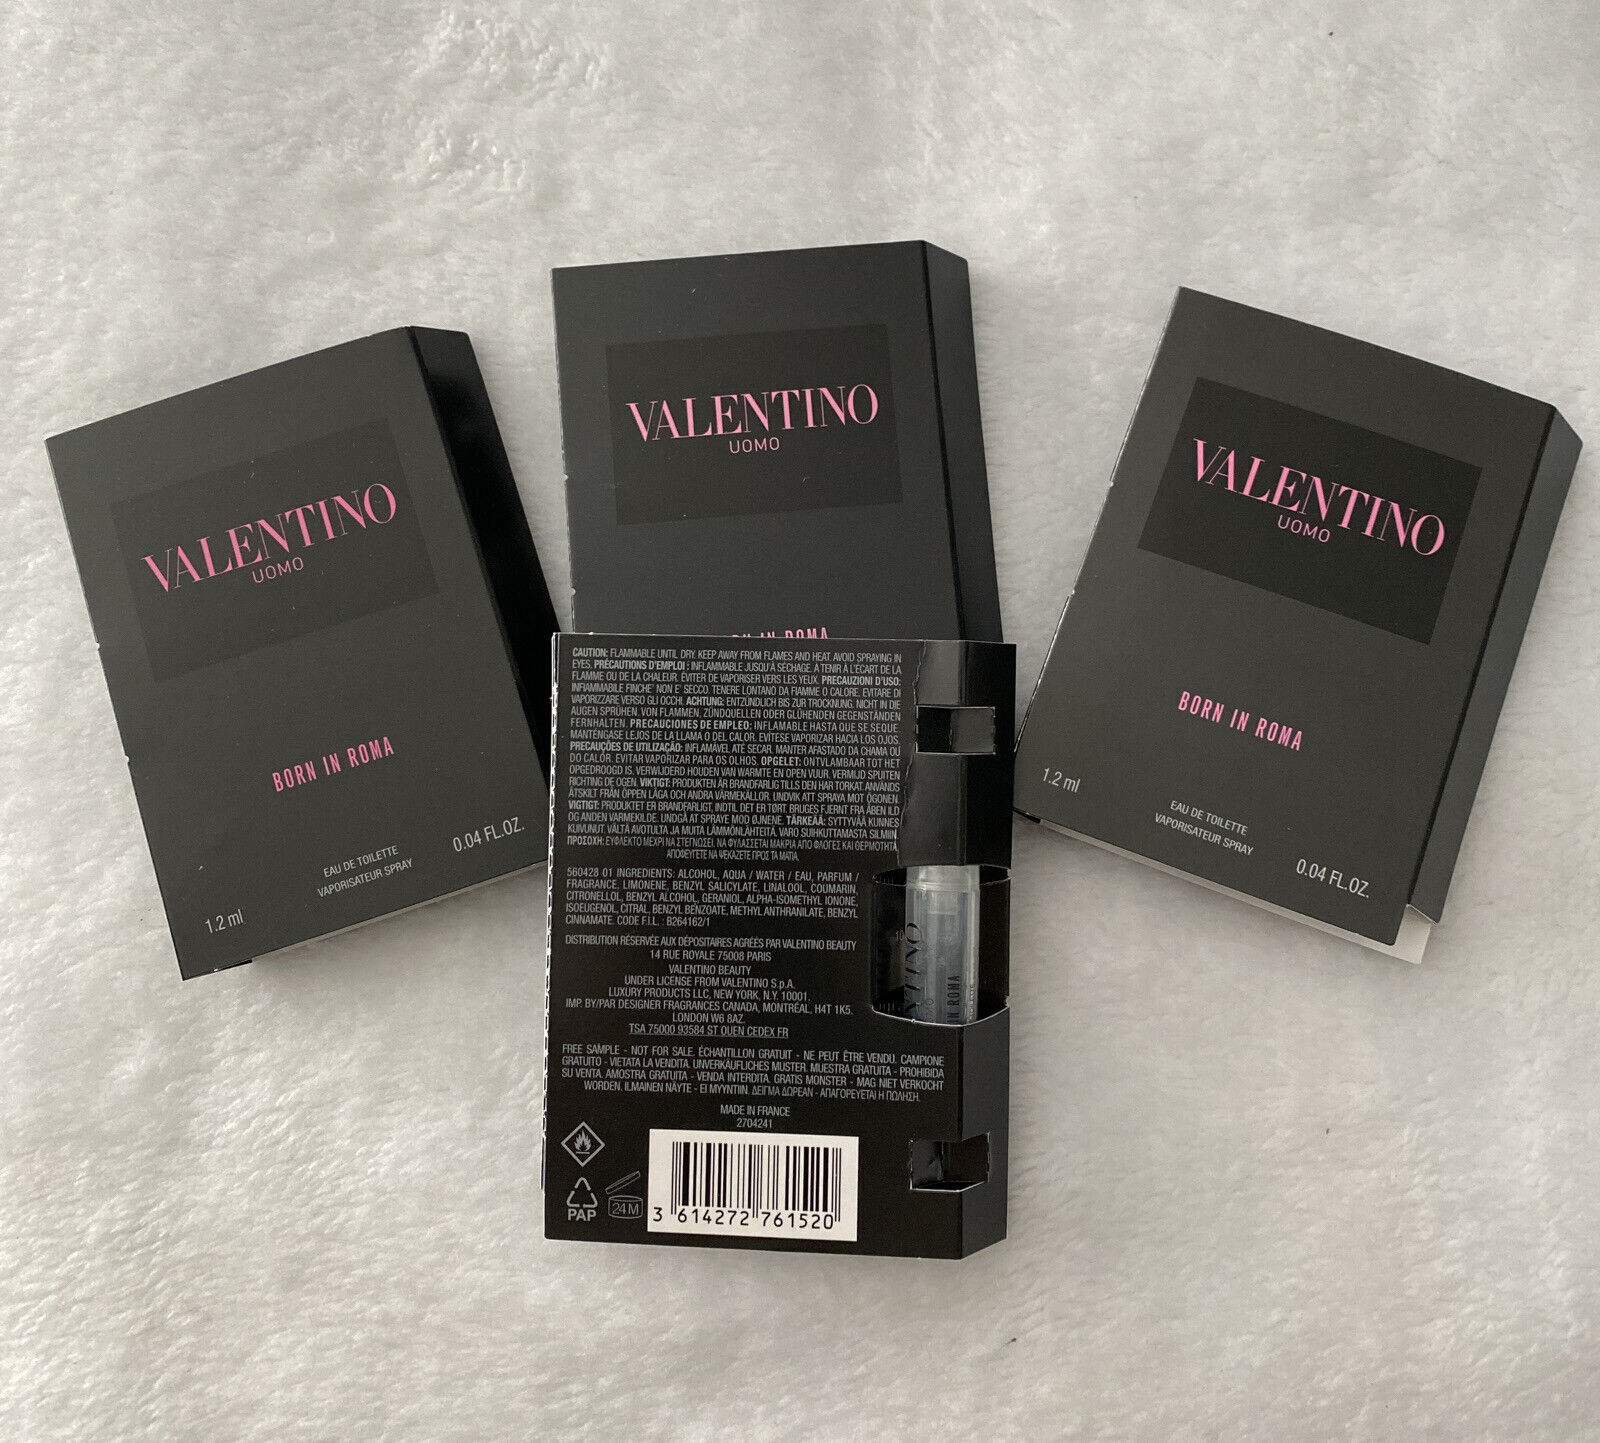 4 x Valentino UOMO BORN IN ROMA EAU DE TOILETTE Mens Cologne Sample 0.04oz/1.2ml